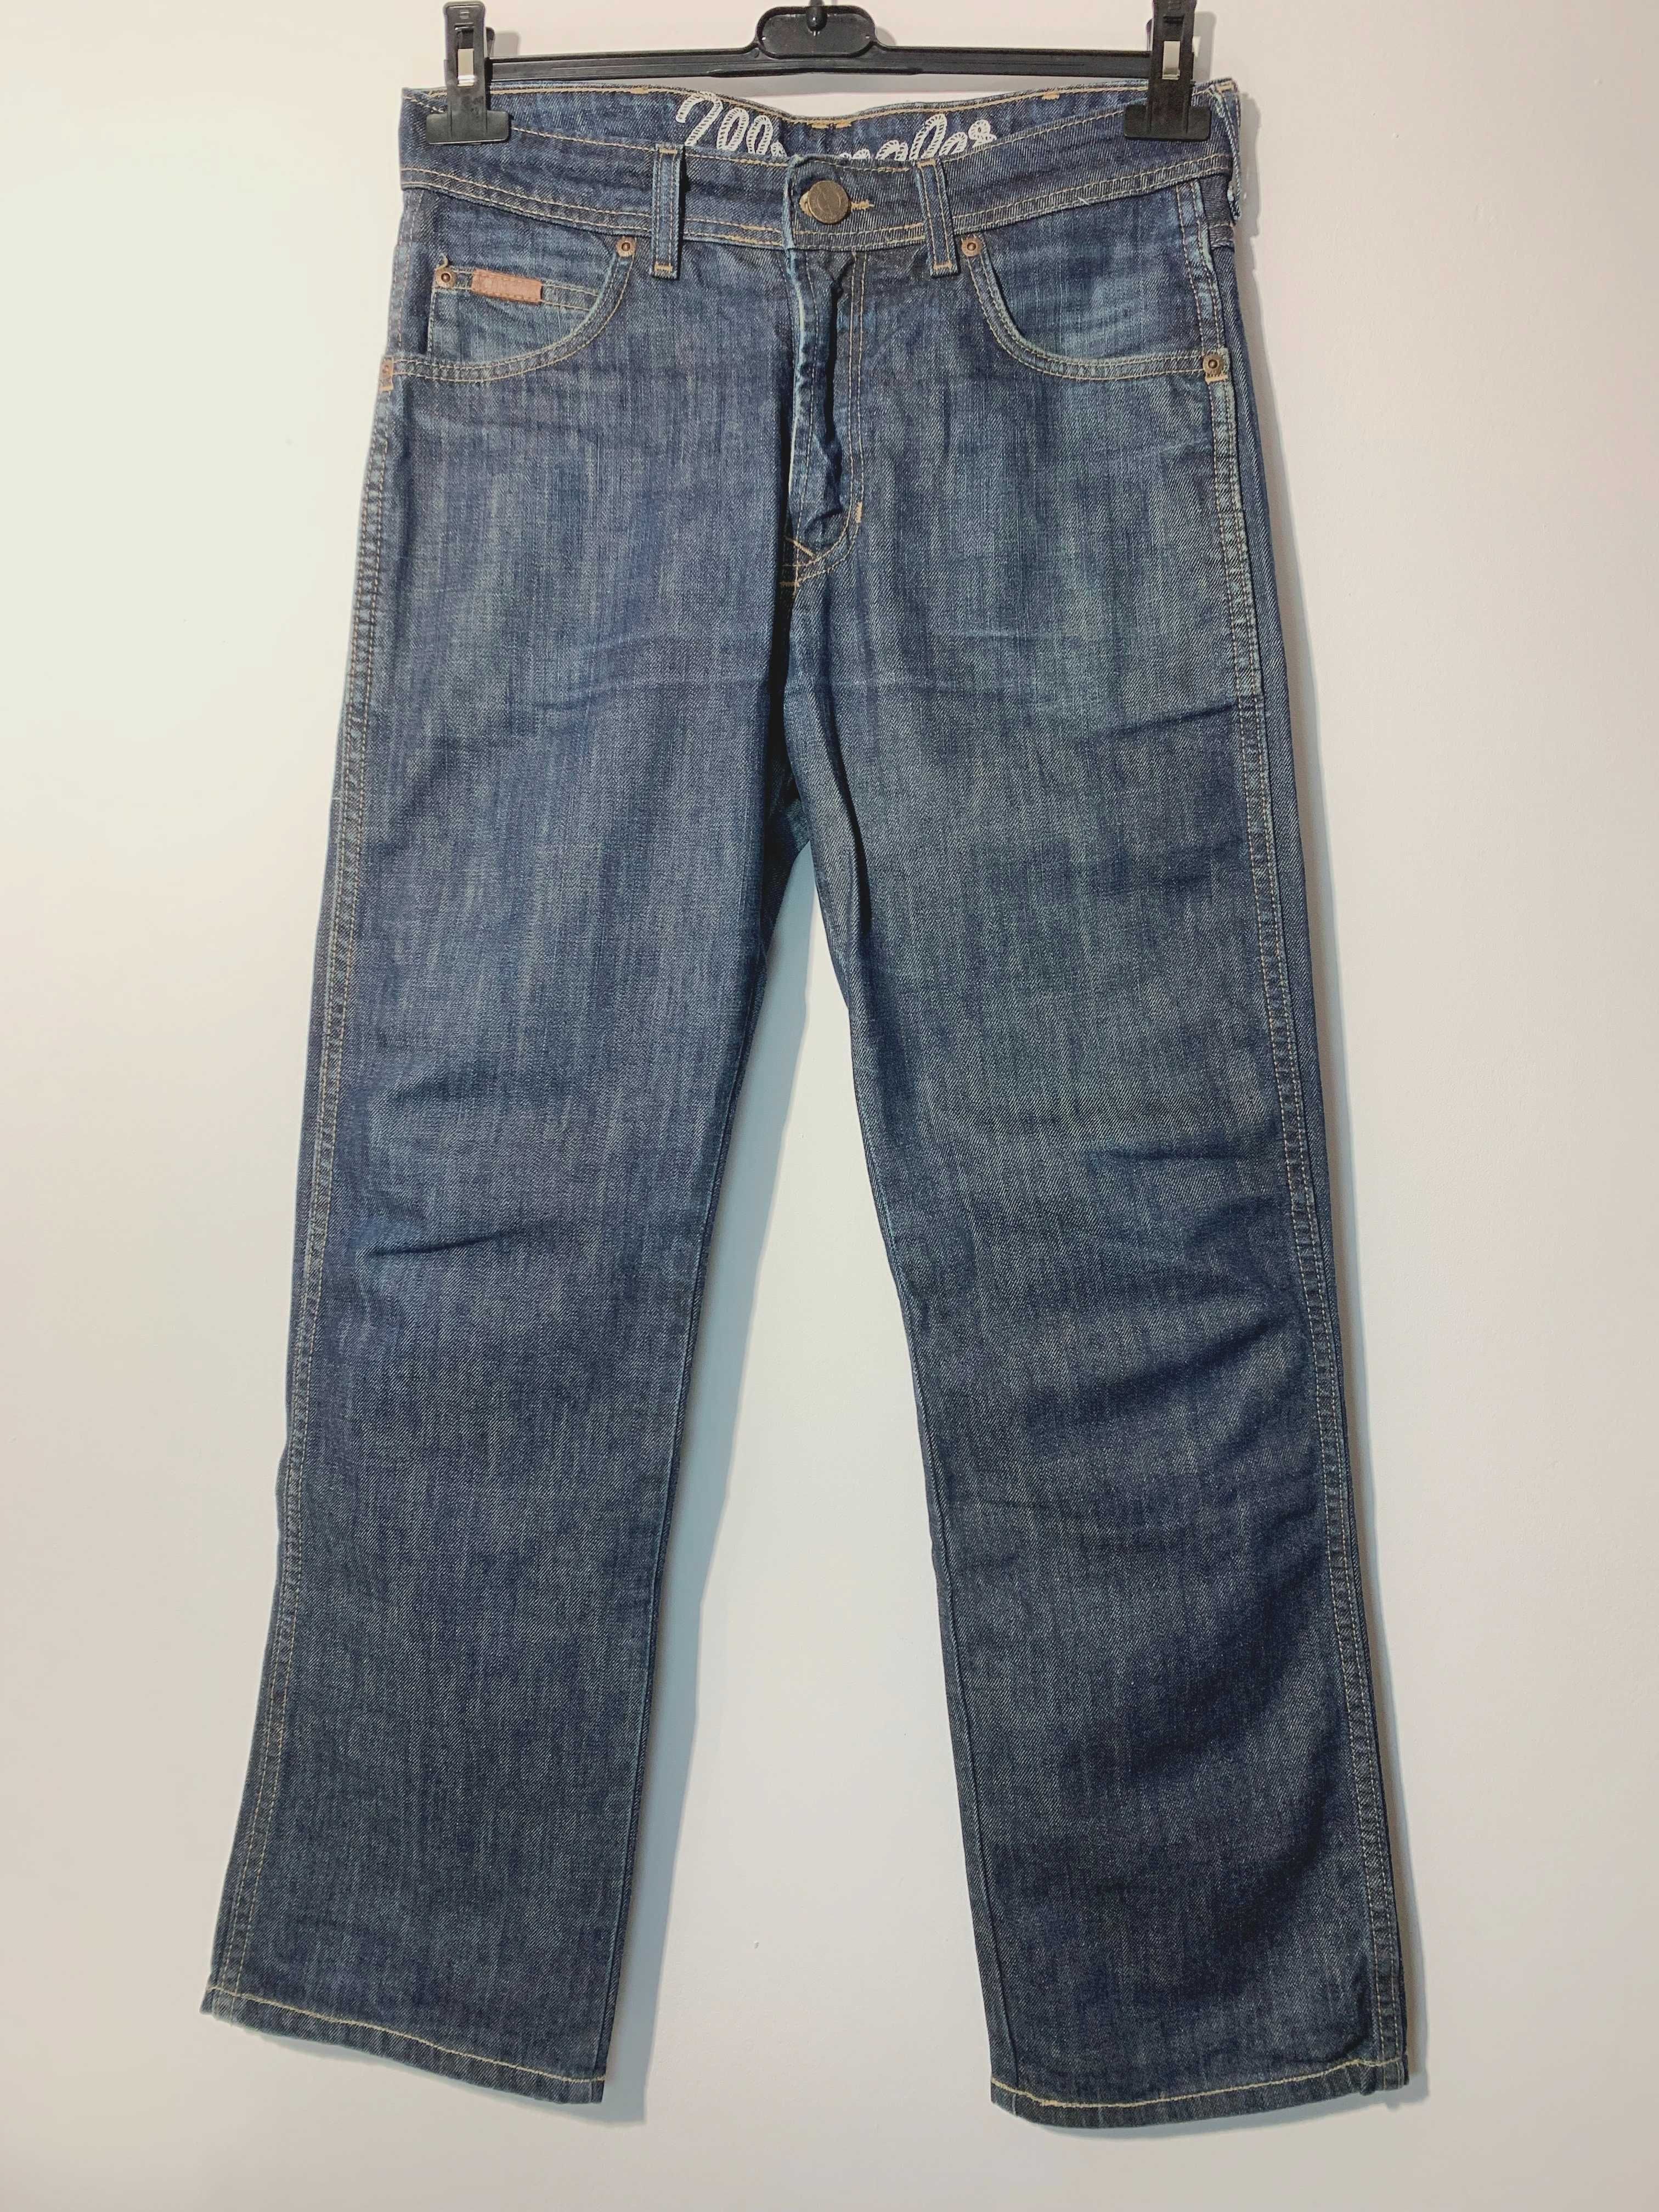 spodnie męskie Wrangler Clyde W29 L32 jeans dżins denim proste S M